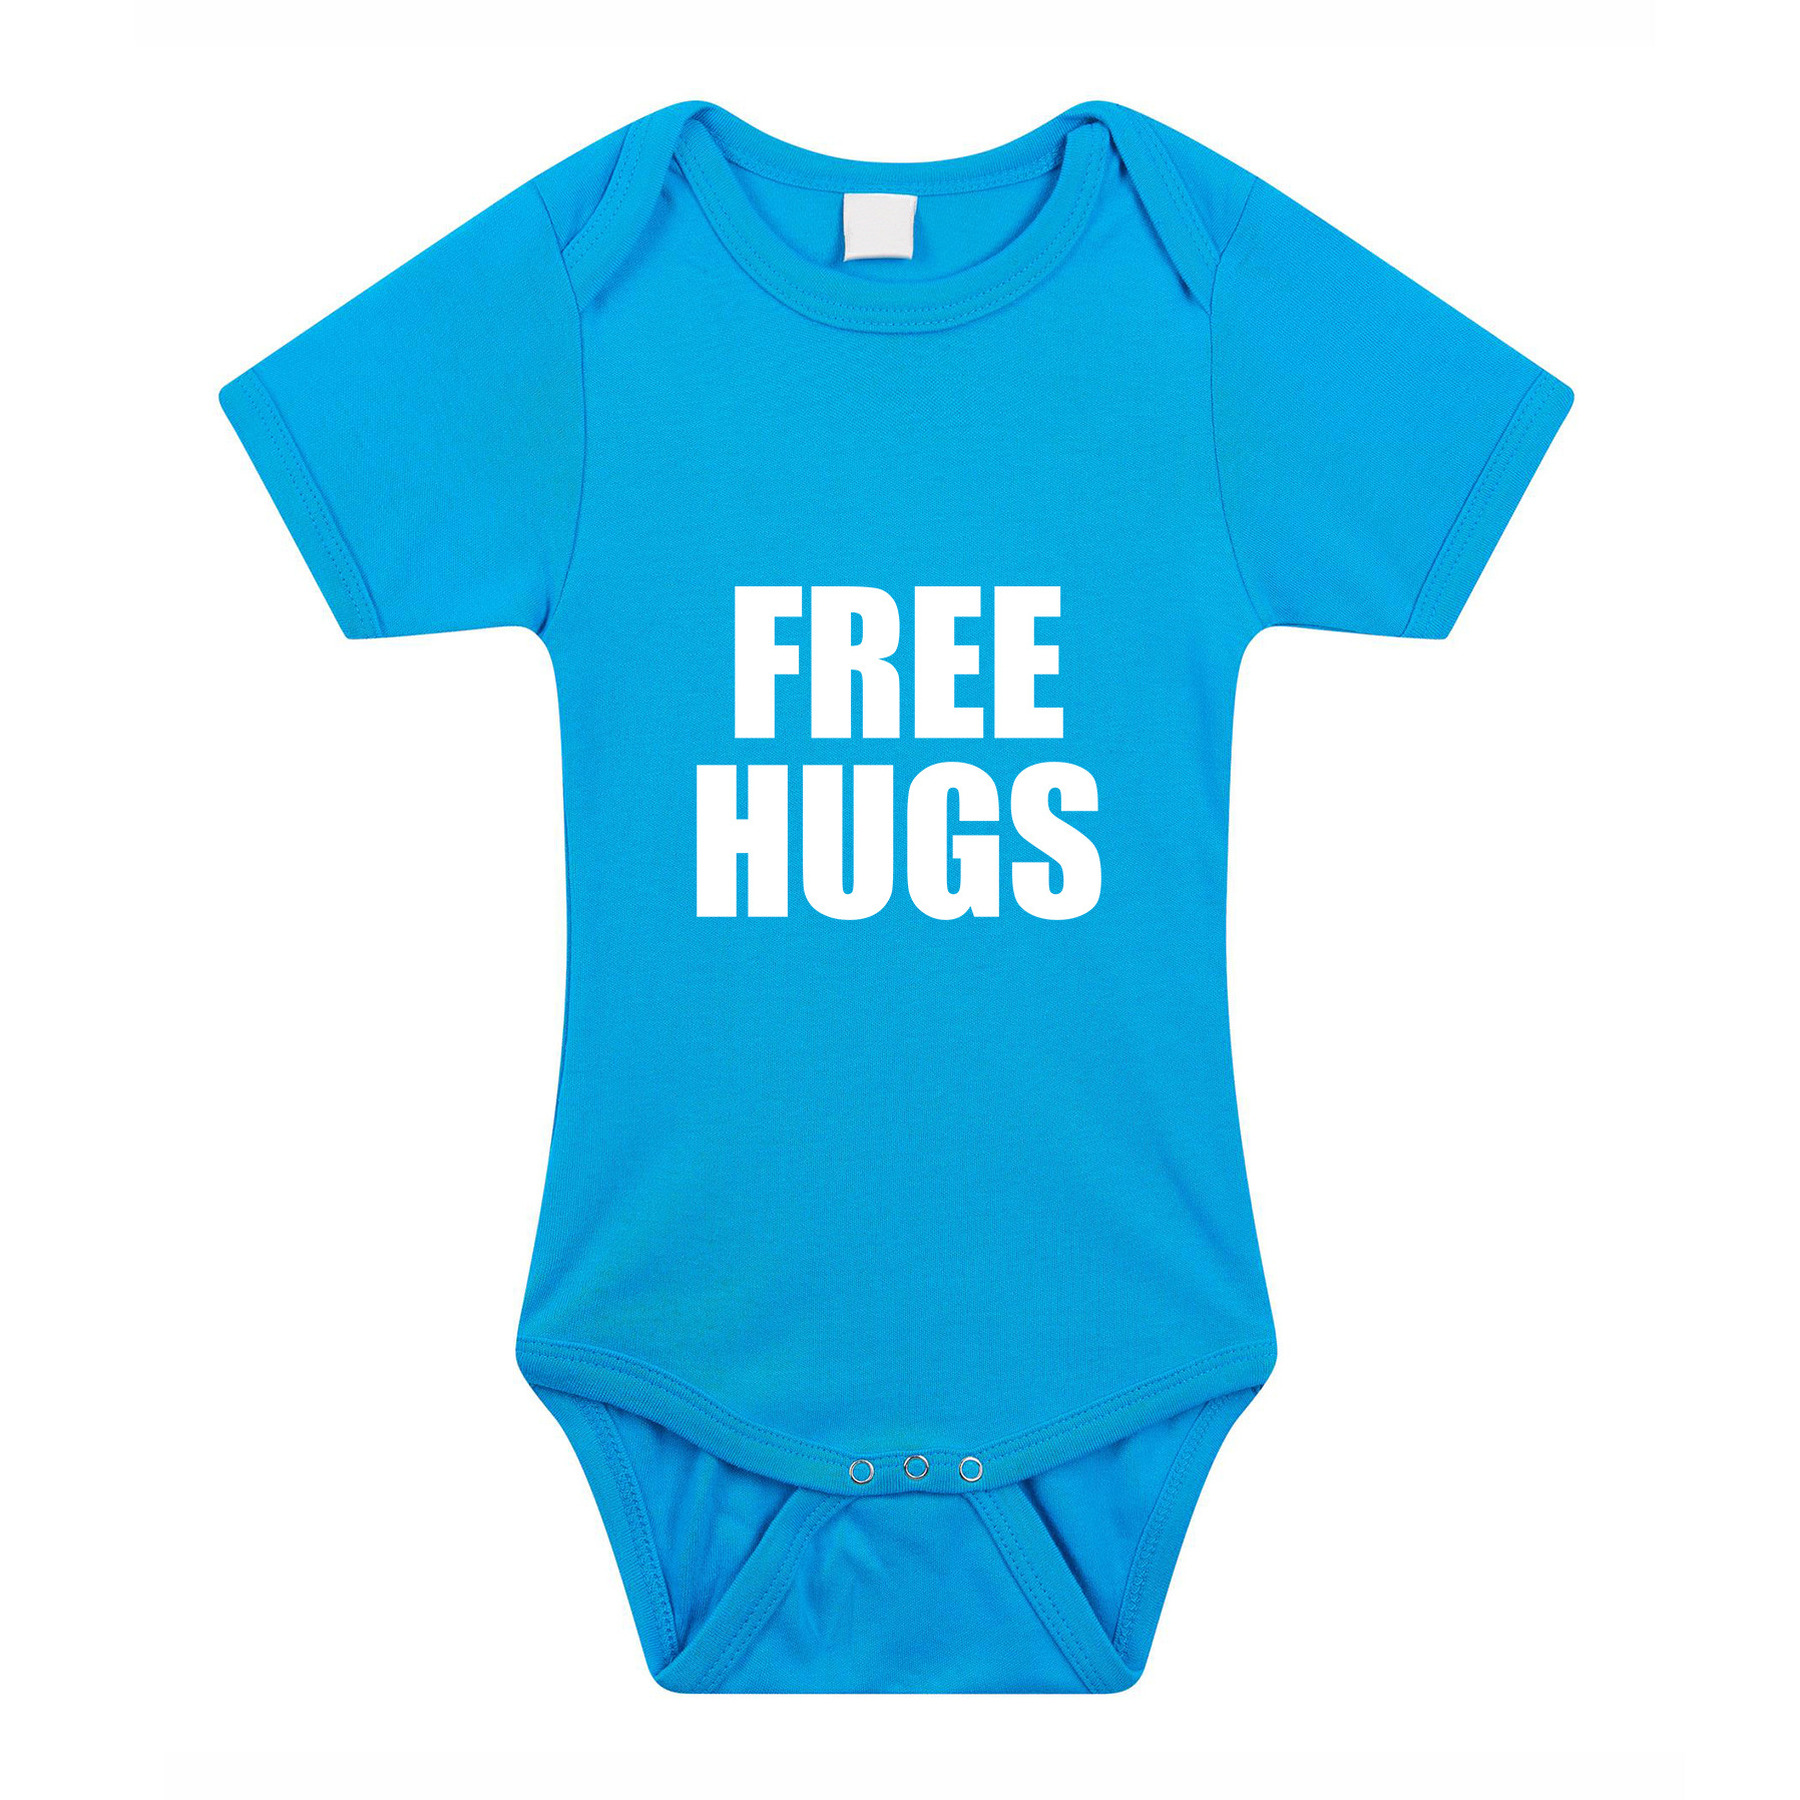 Free hugs kraamcadeau rompertje blauw jongens